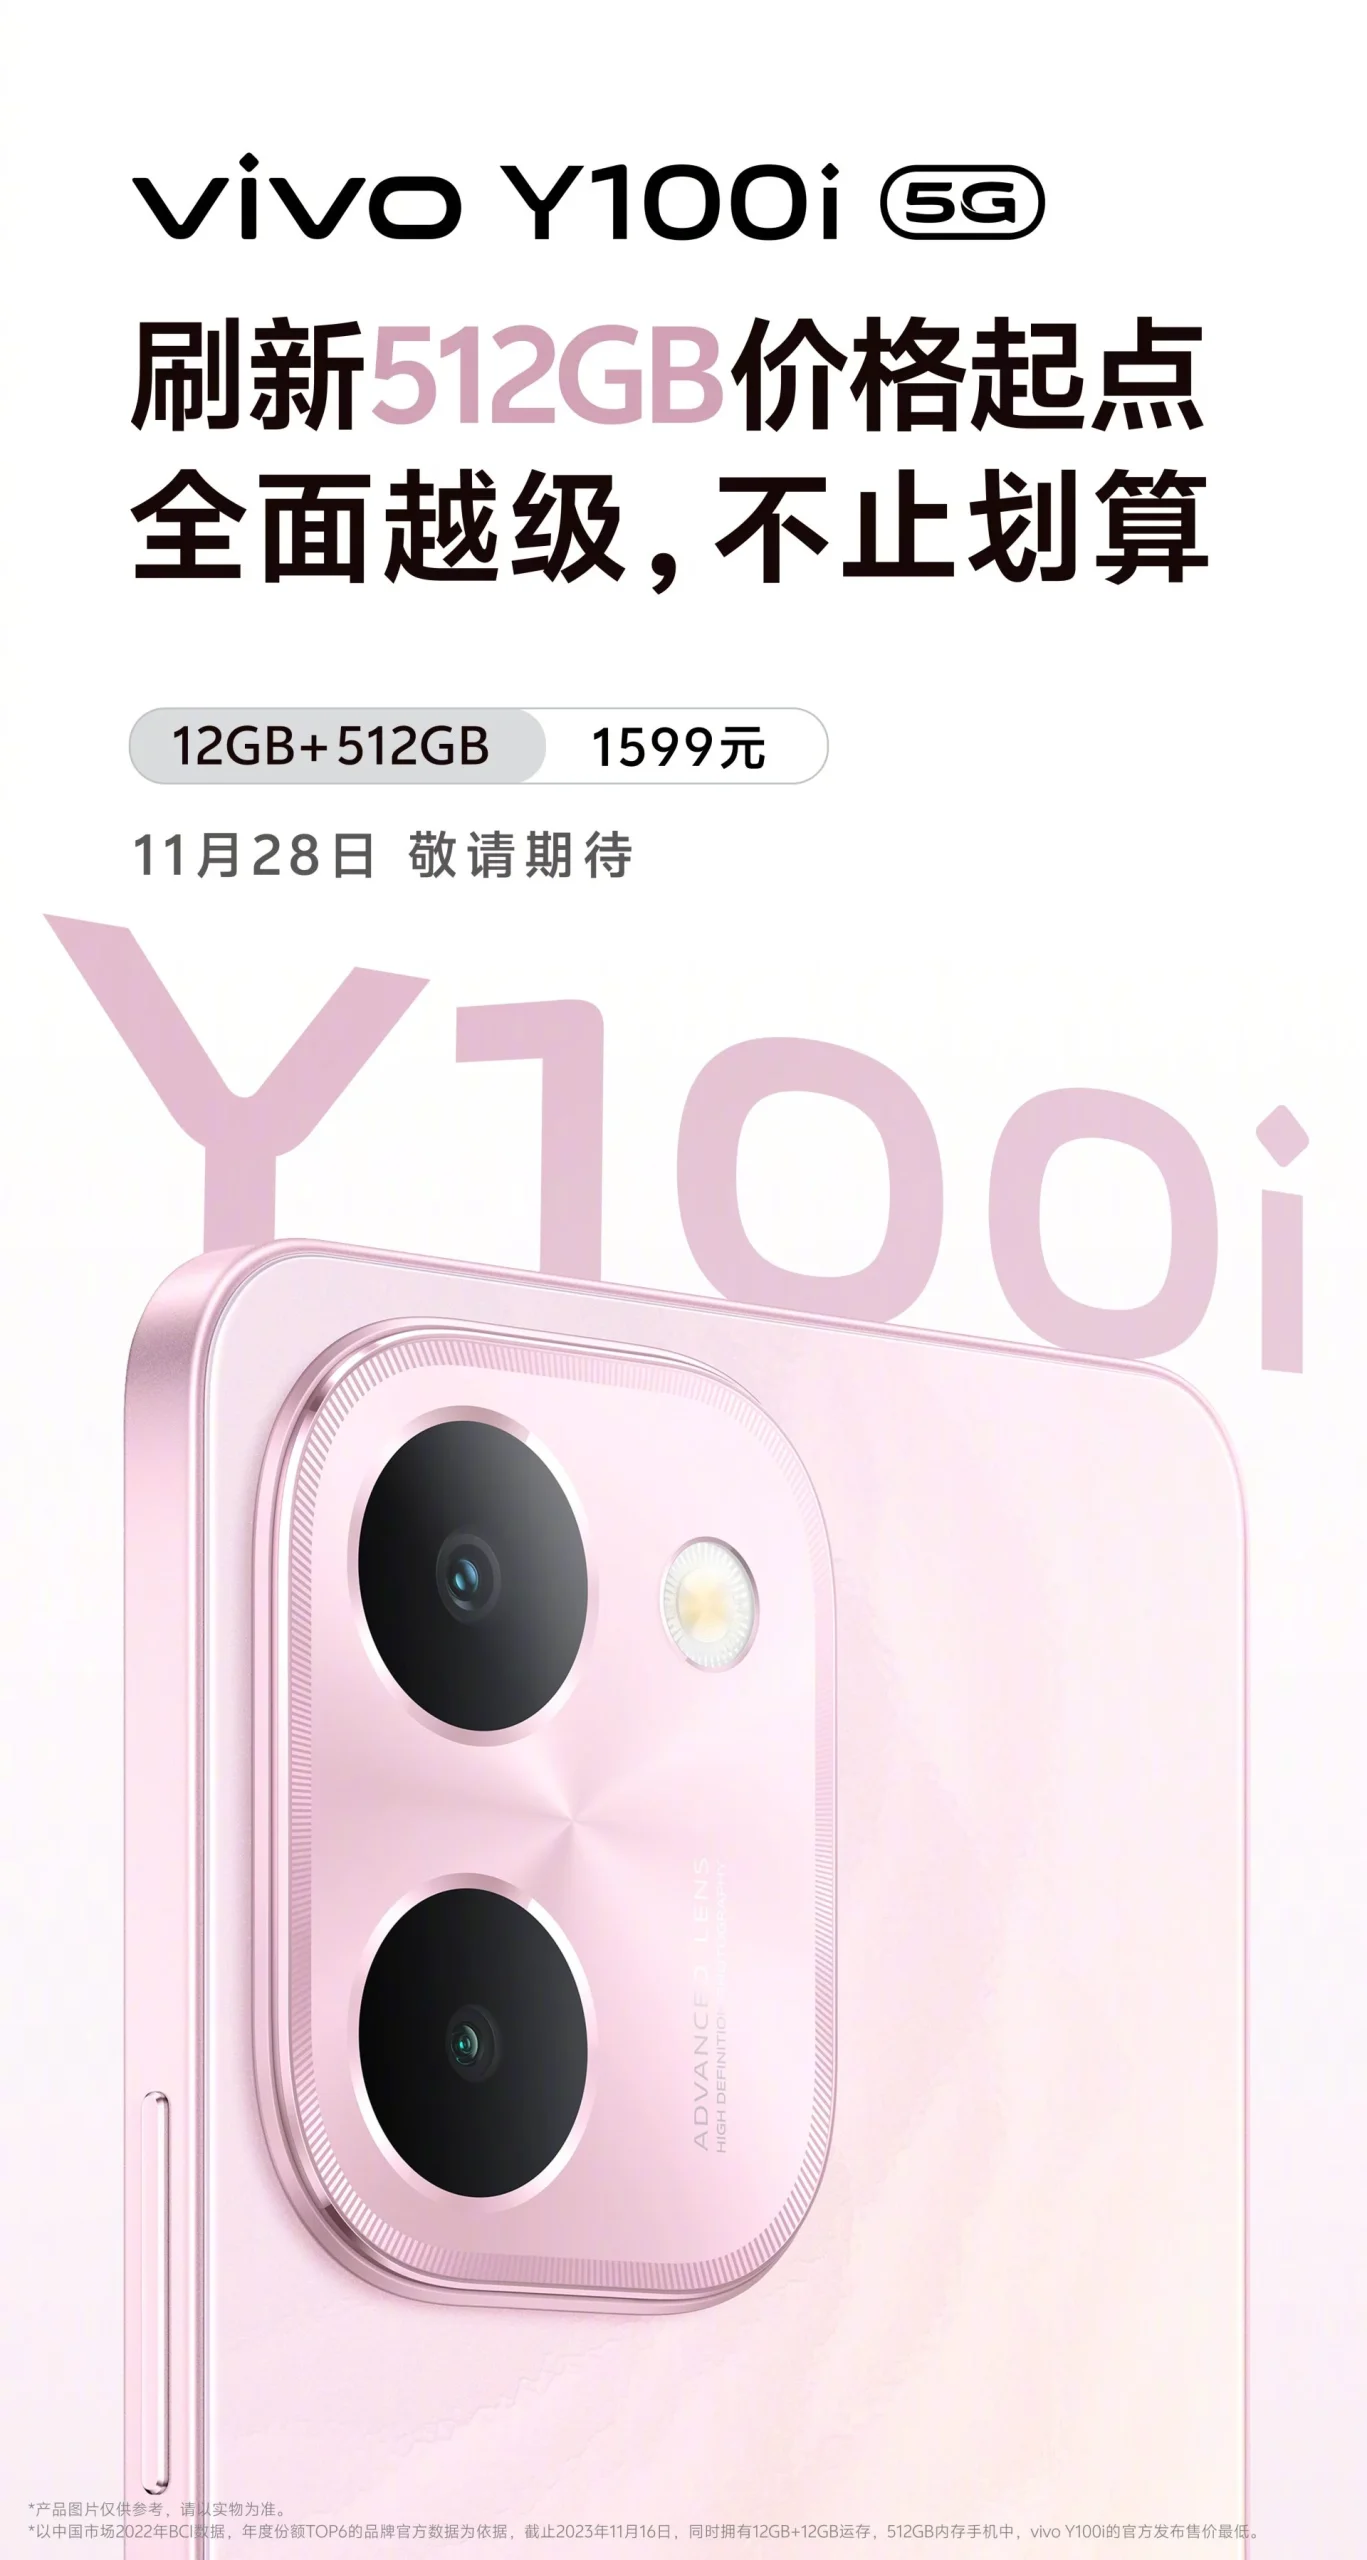 Vivo Y100i 5G features